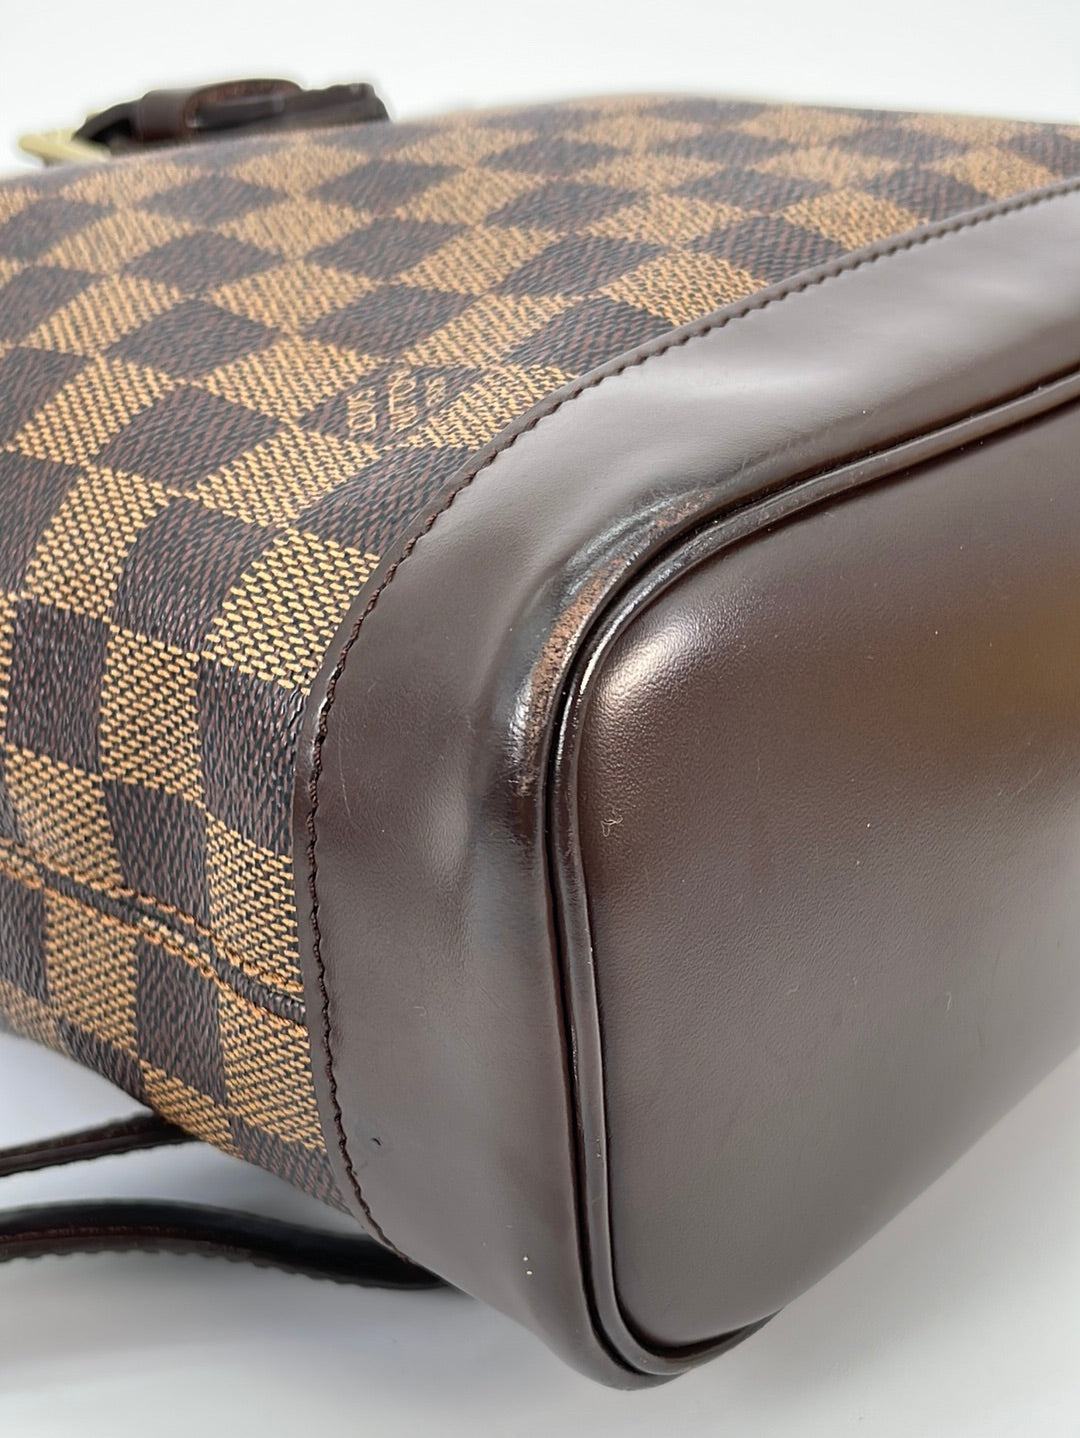 Louis Vuitton Soho Backpack 353053